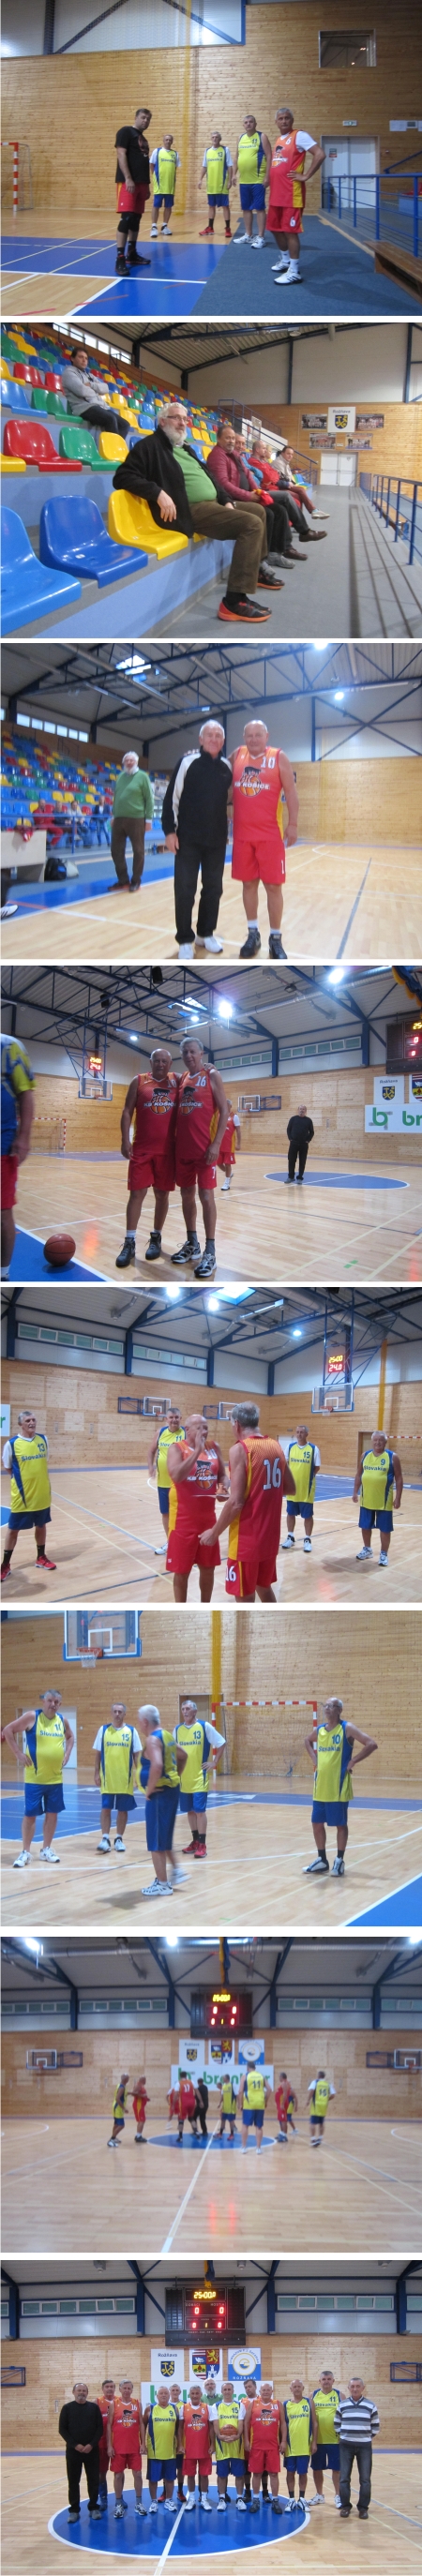 Basketbalové stretnutie veteránov bolo venované spomienke zosnulého spoluhráča Igora Miklošika 